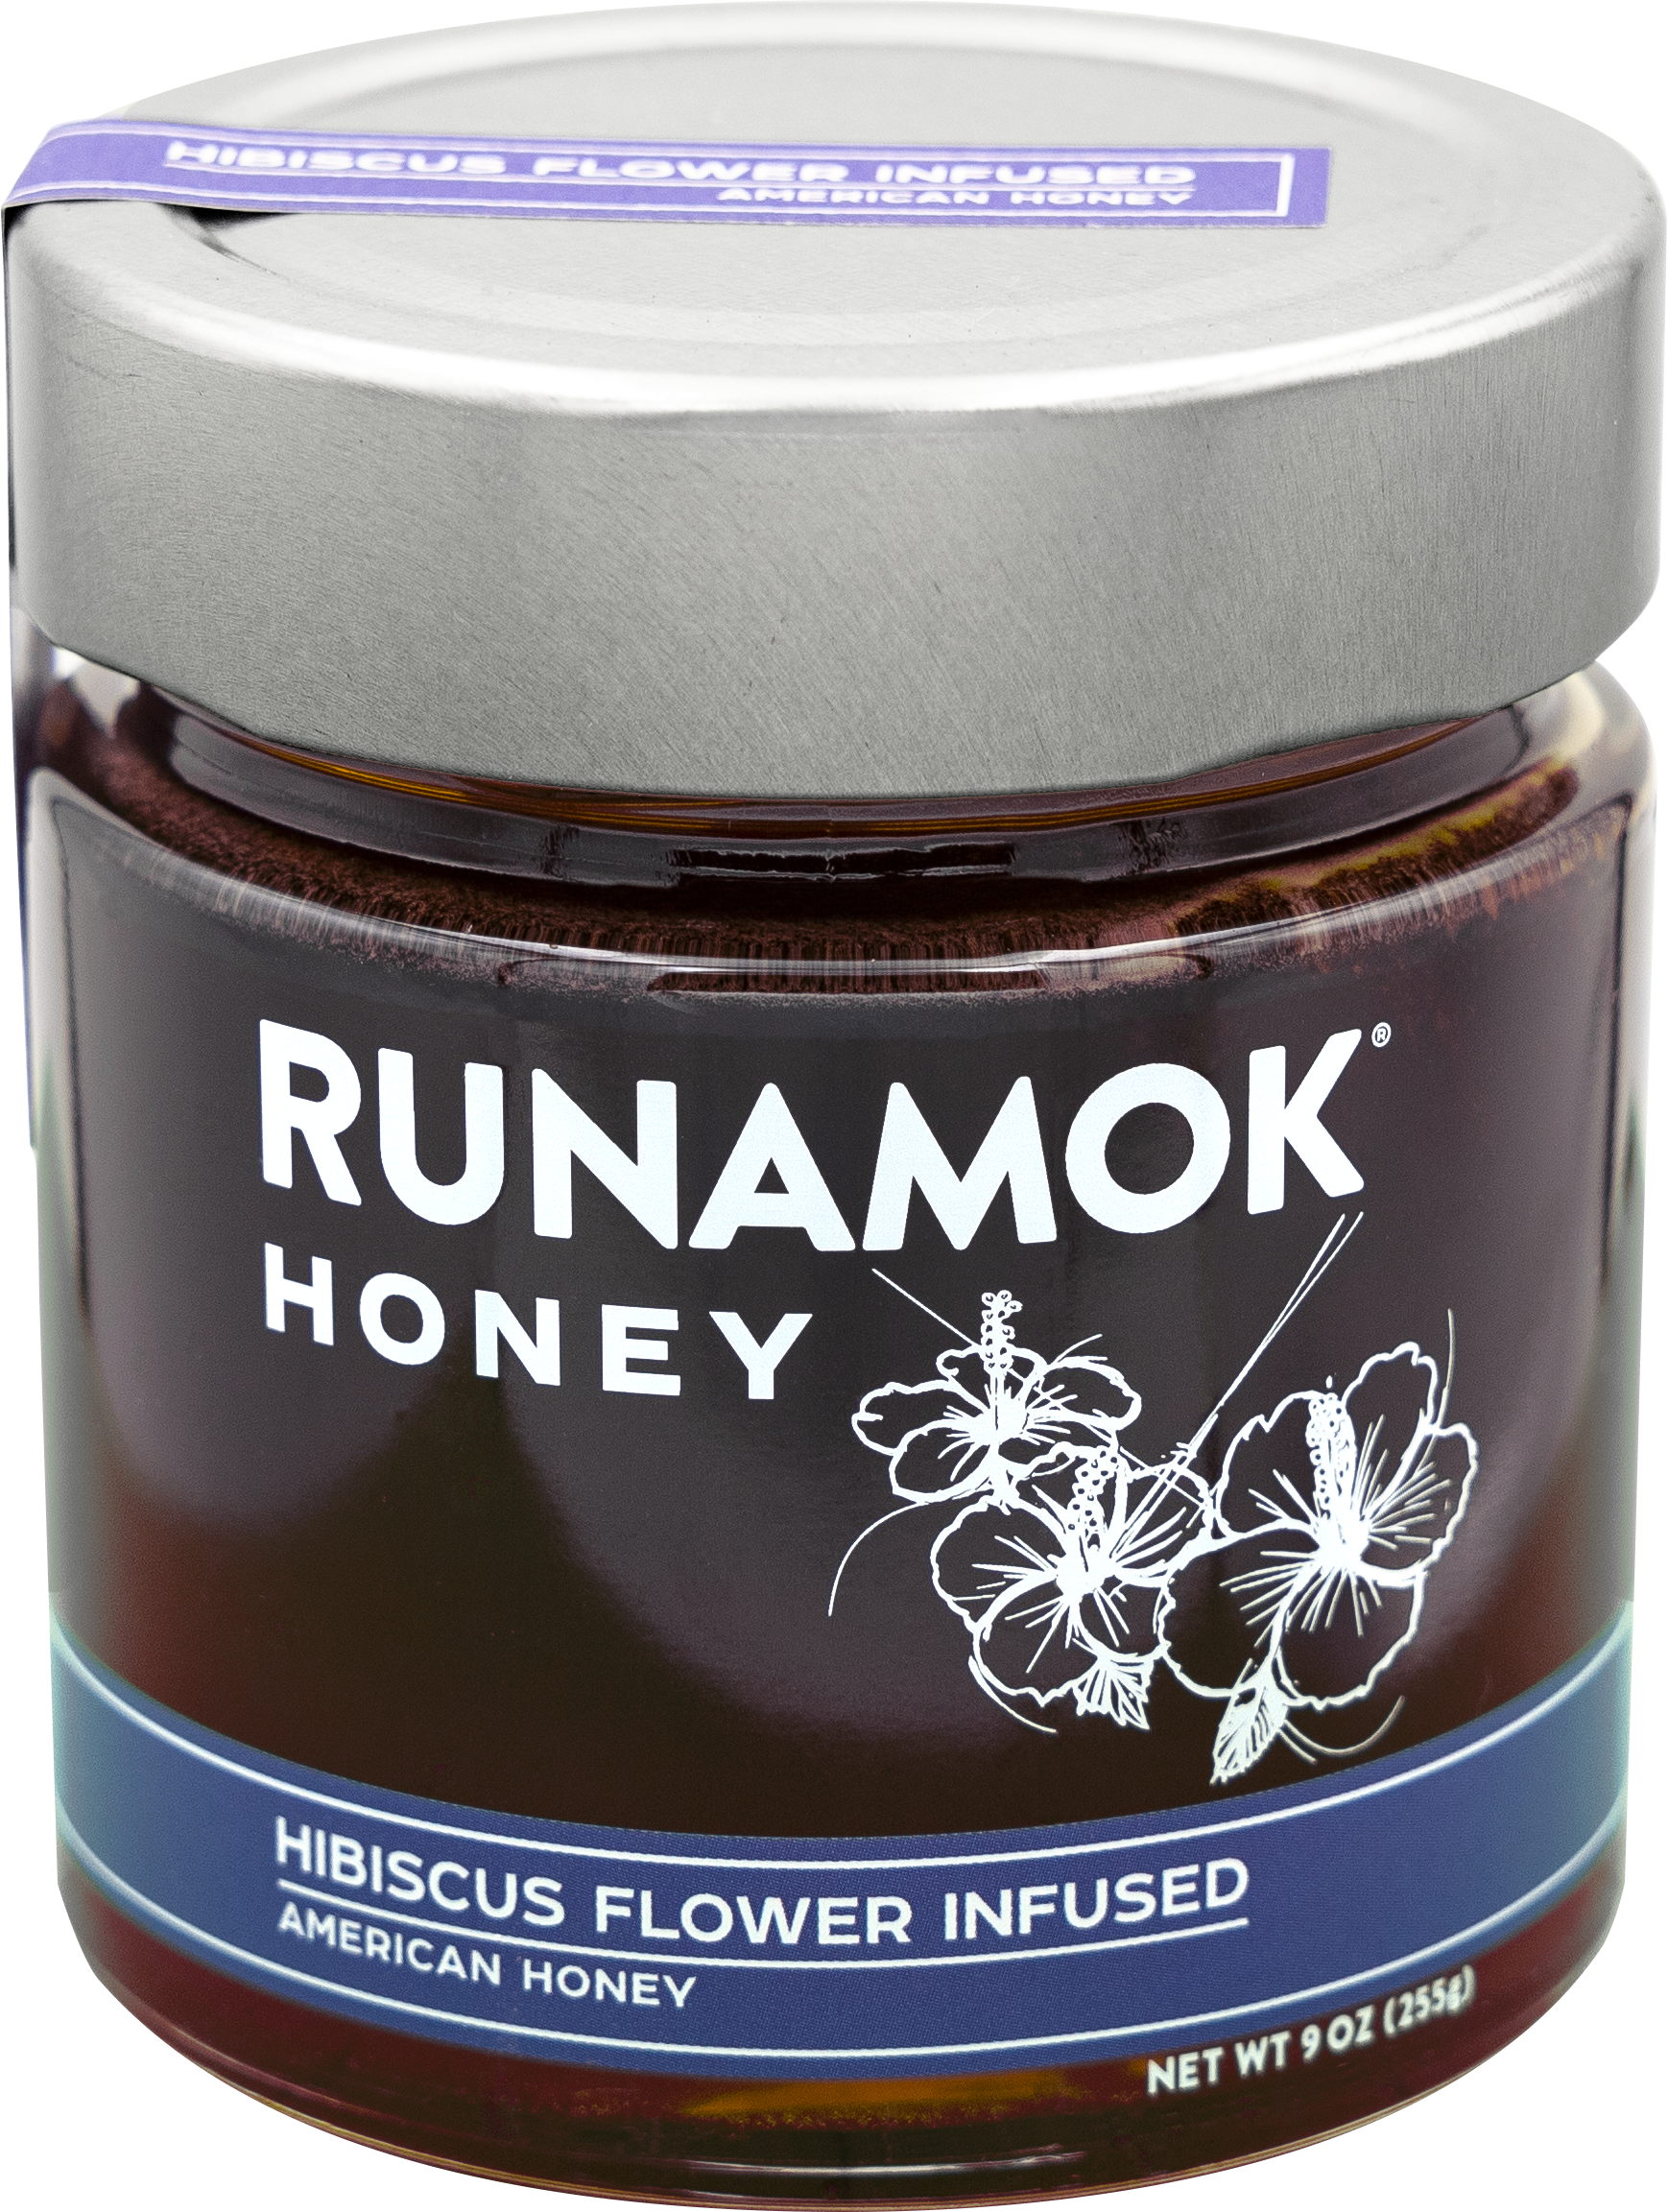 Hibiscus Flower Infused American Honey